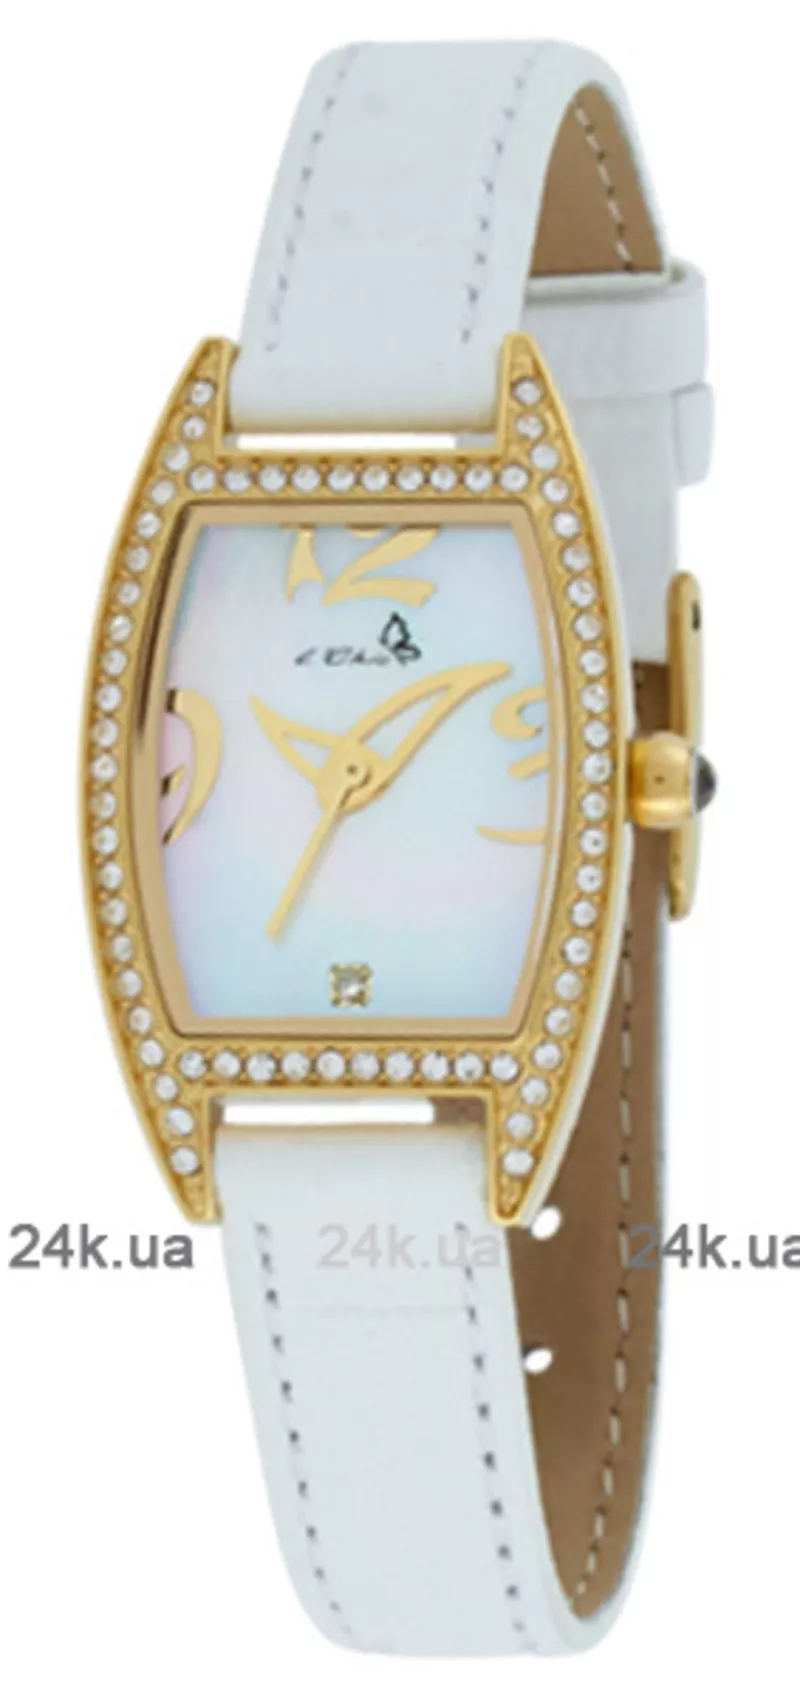 Часы Le Chic CL 2065D G WH